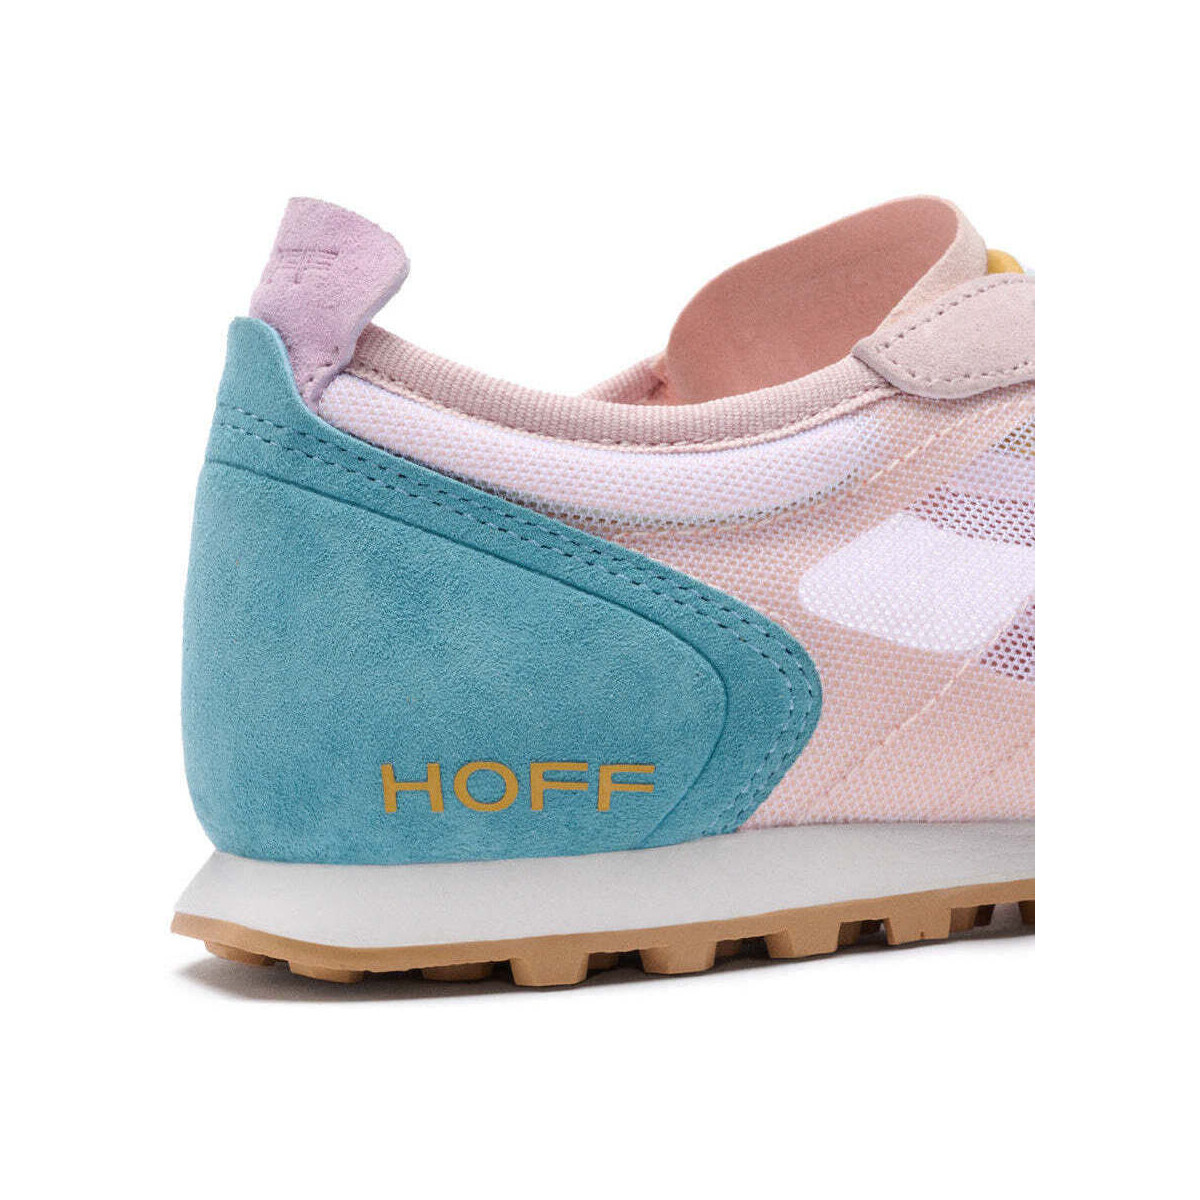 HOFF Multicolore Chaussures FLAMINGO pour femmes lliZT0Uq